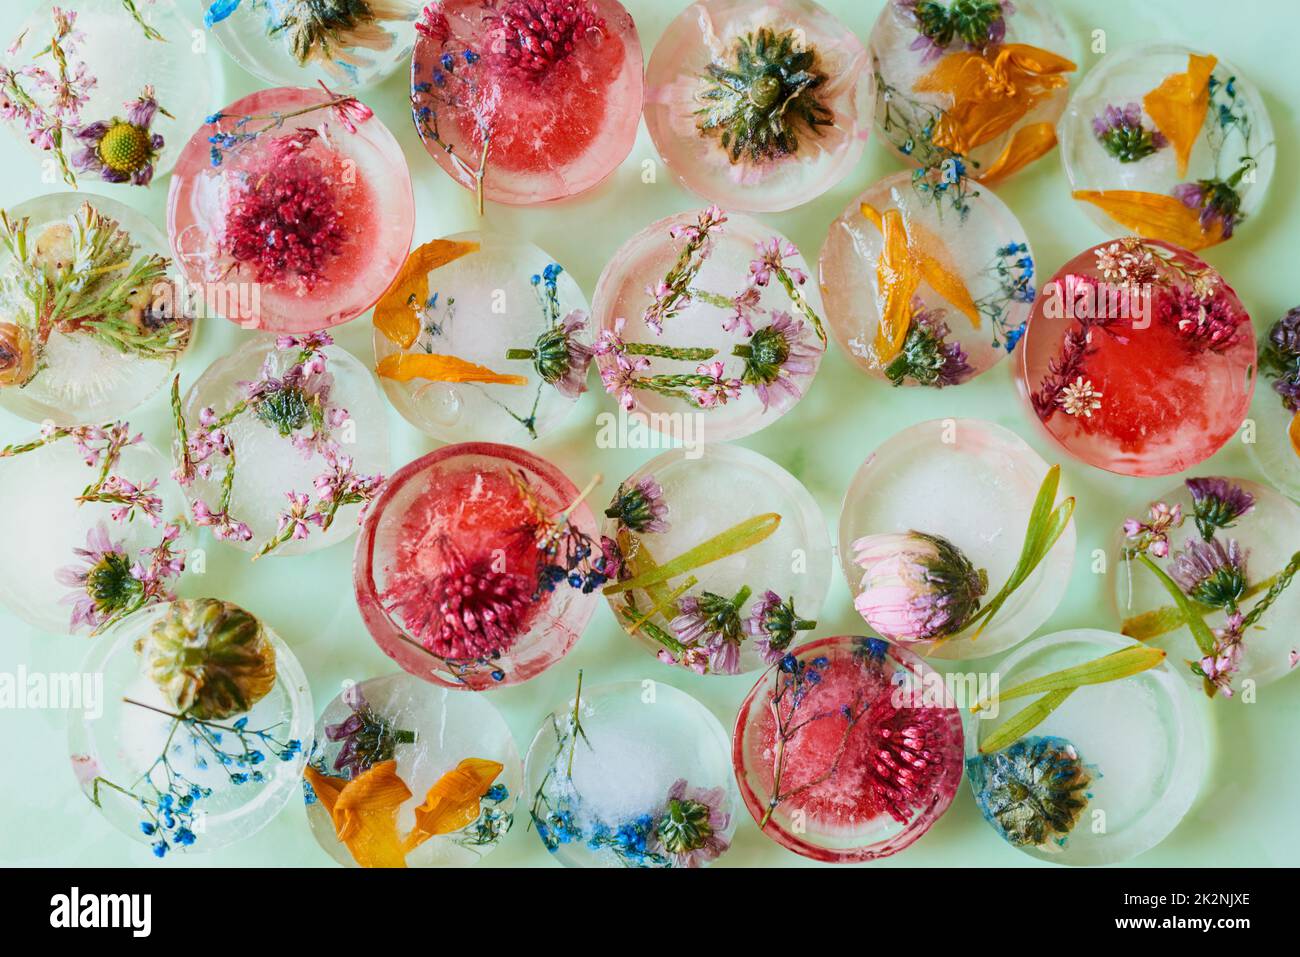 Pour un joli élément sur une table d'été. Photo studio de fleurs congelées dans des blocs de glace. Banque D'Images